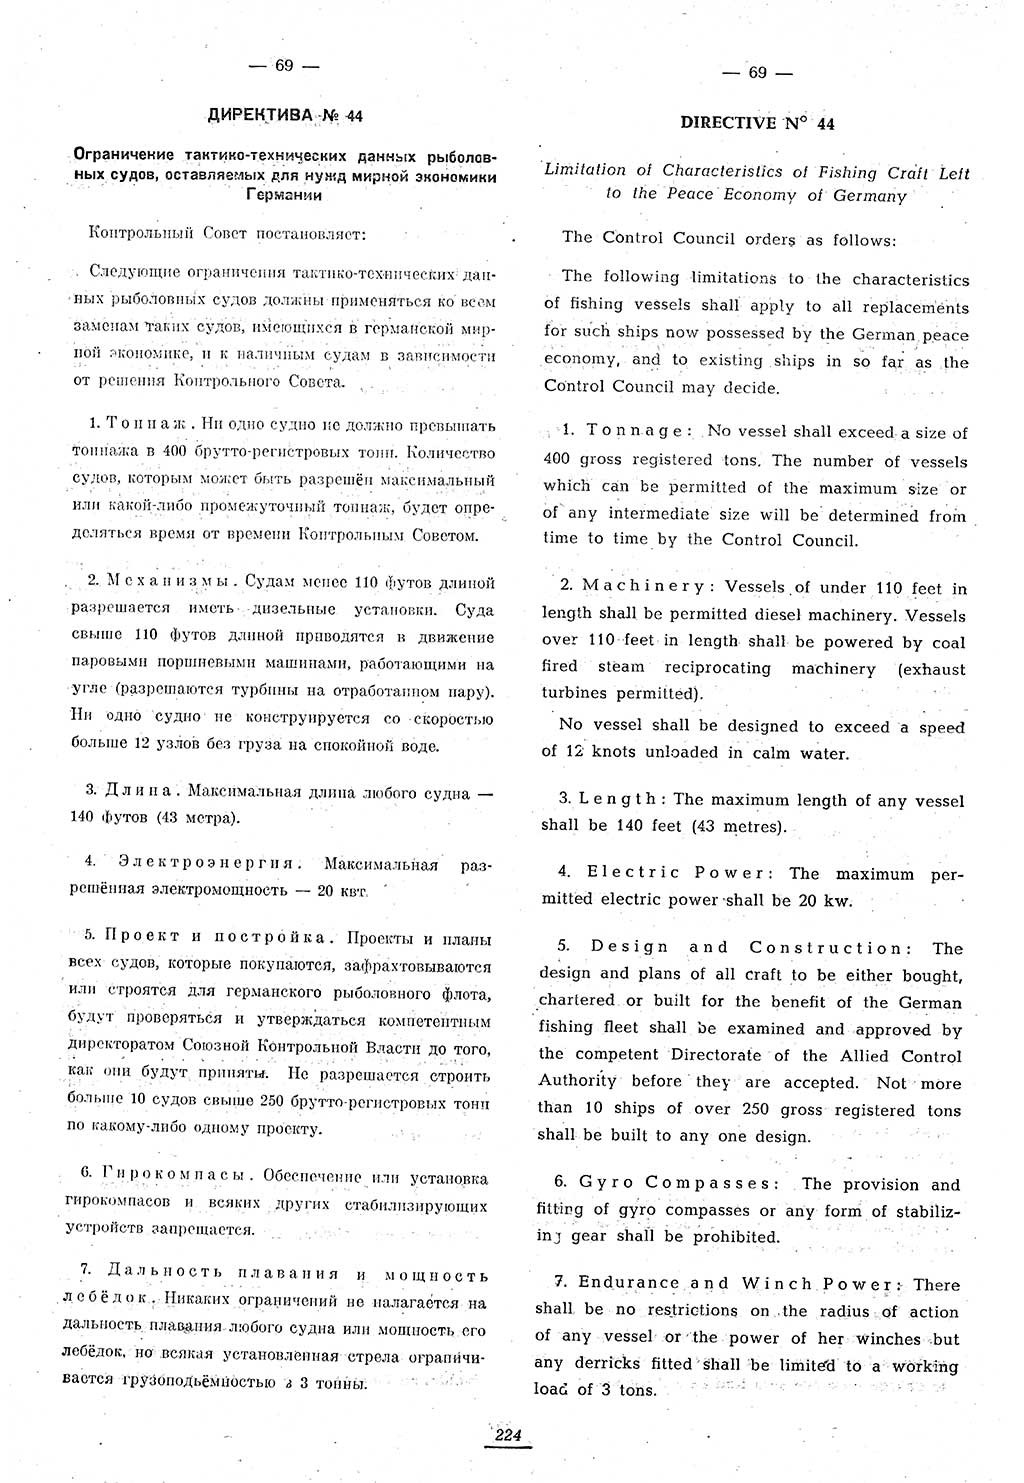 Amtsblatt des Kontrollrats (ABlKR) in Deutschland 1946, Seite 224/1 (ABlKR Dtl. 1946, S. 224/1)